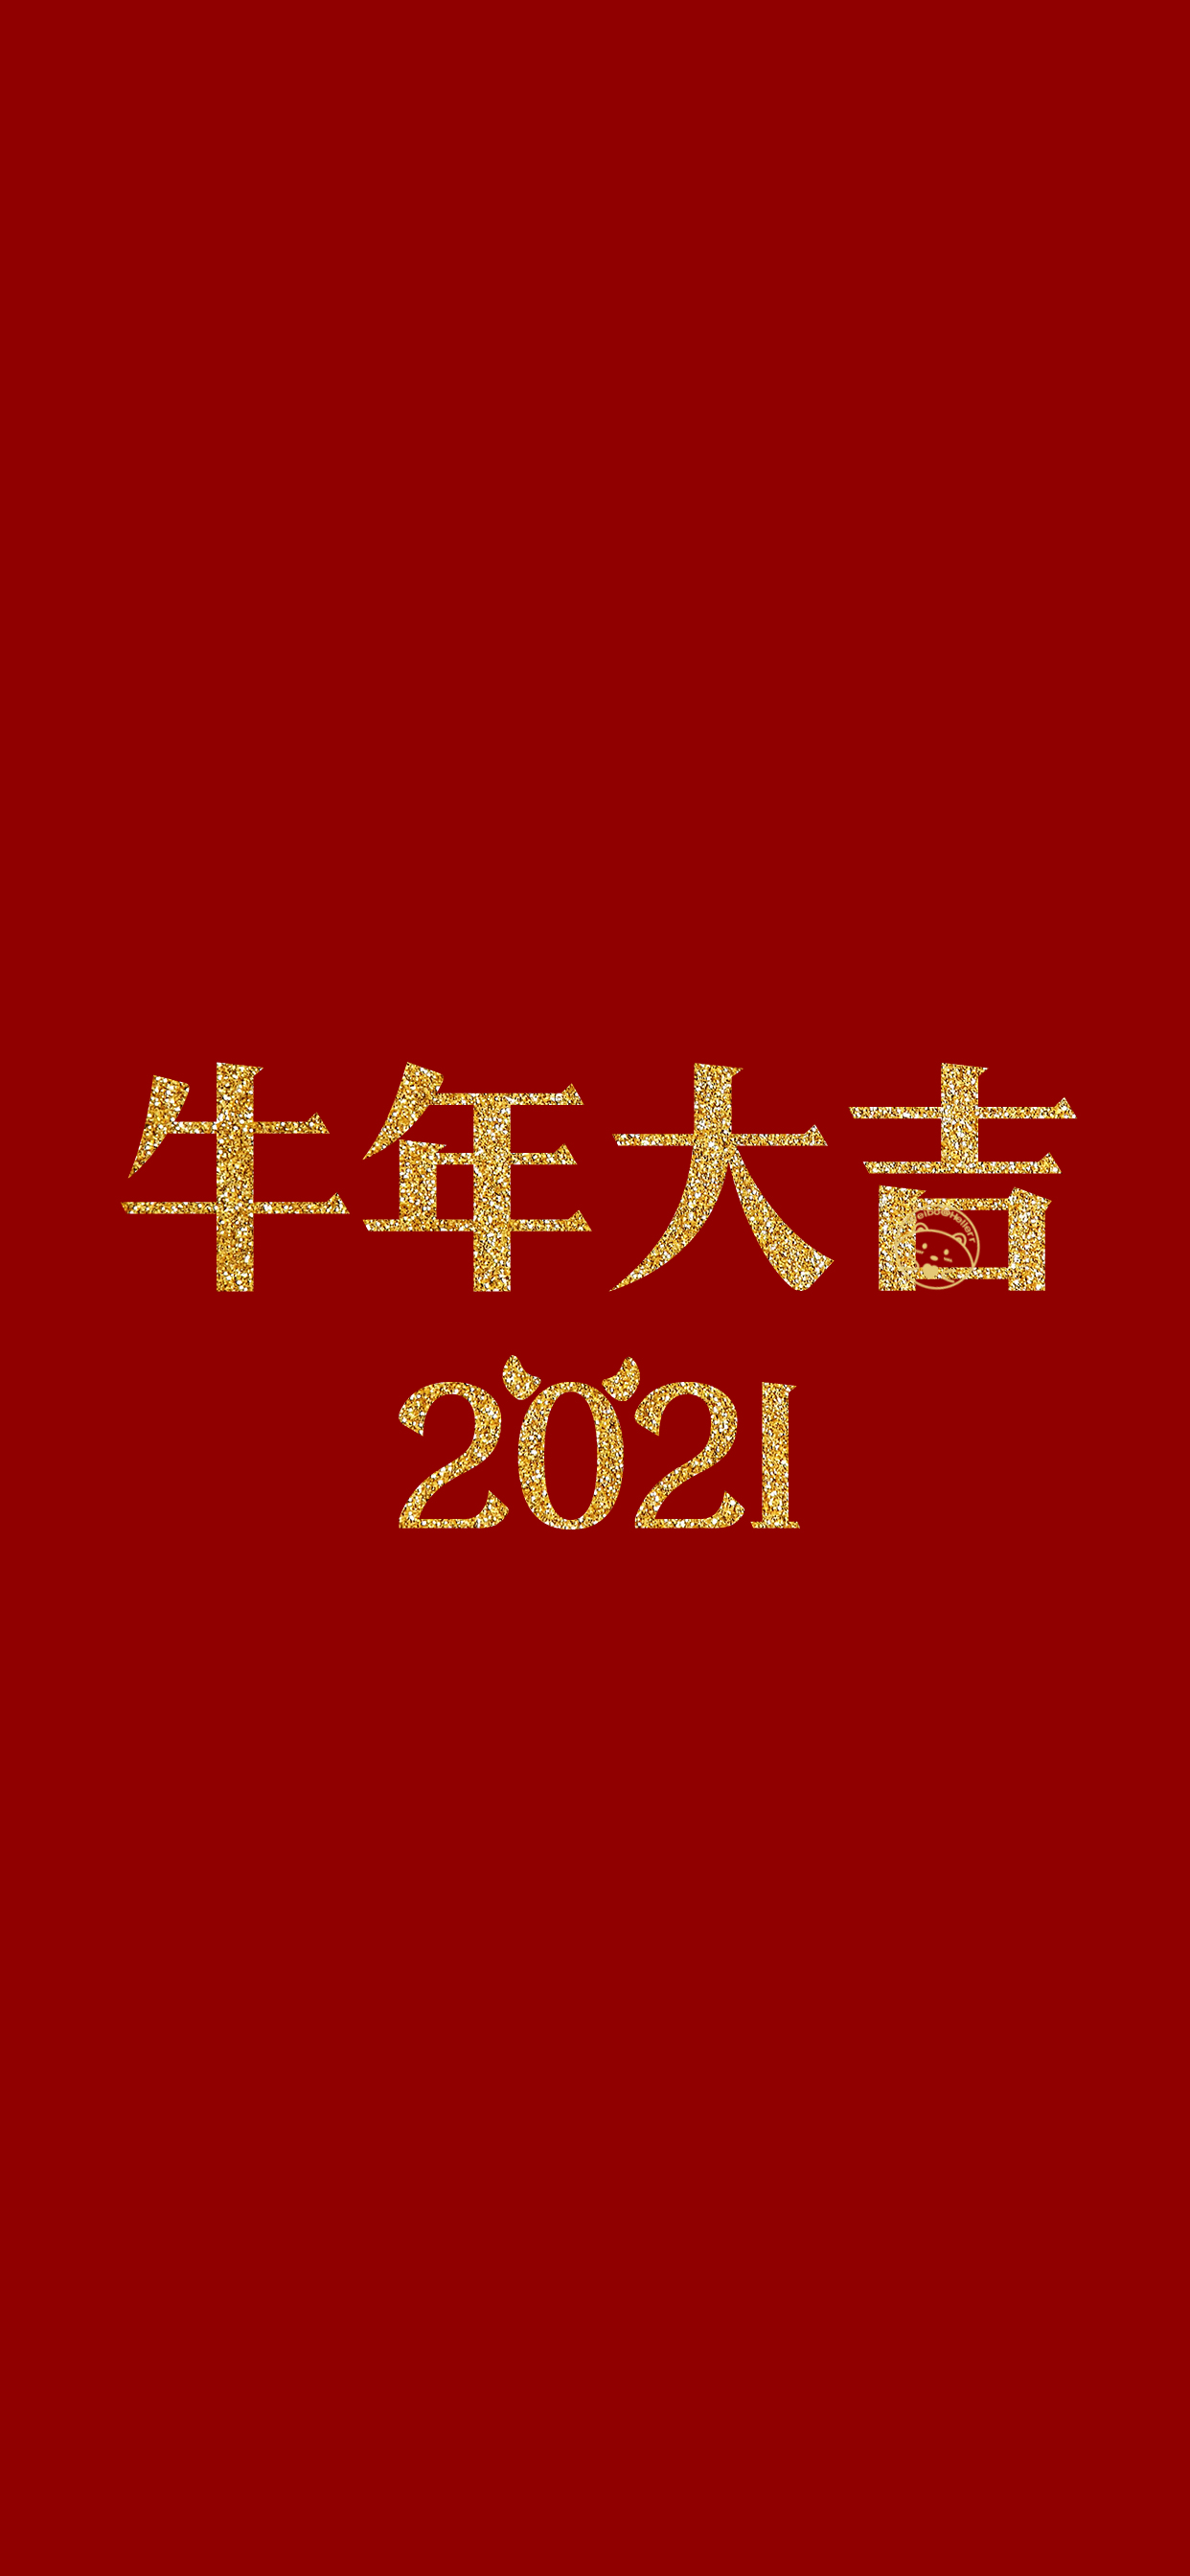 2021牛年新年快乐词语图片